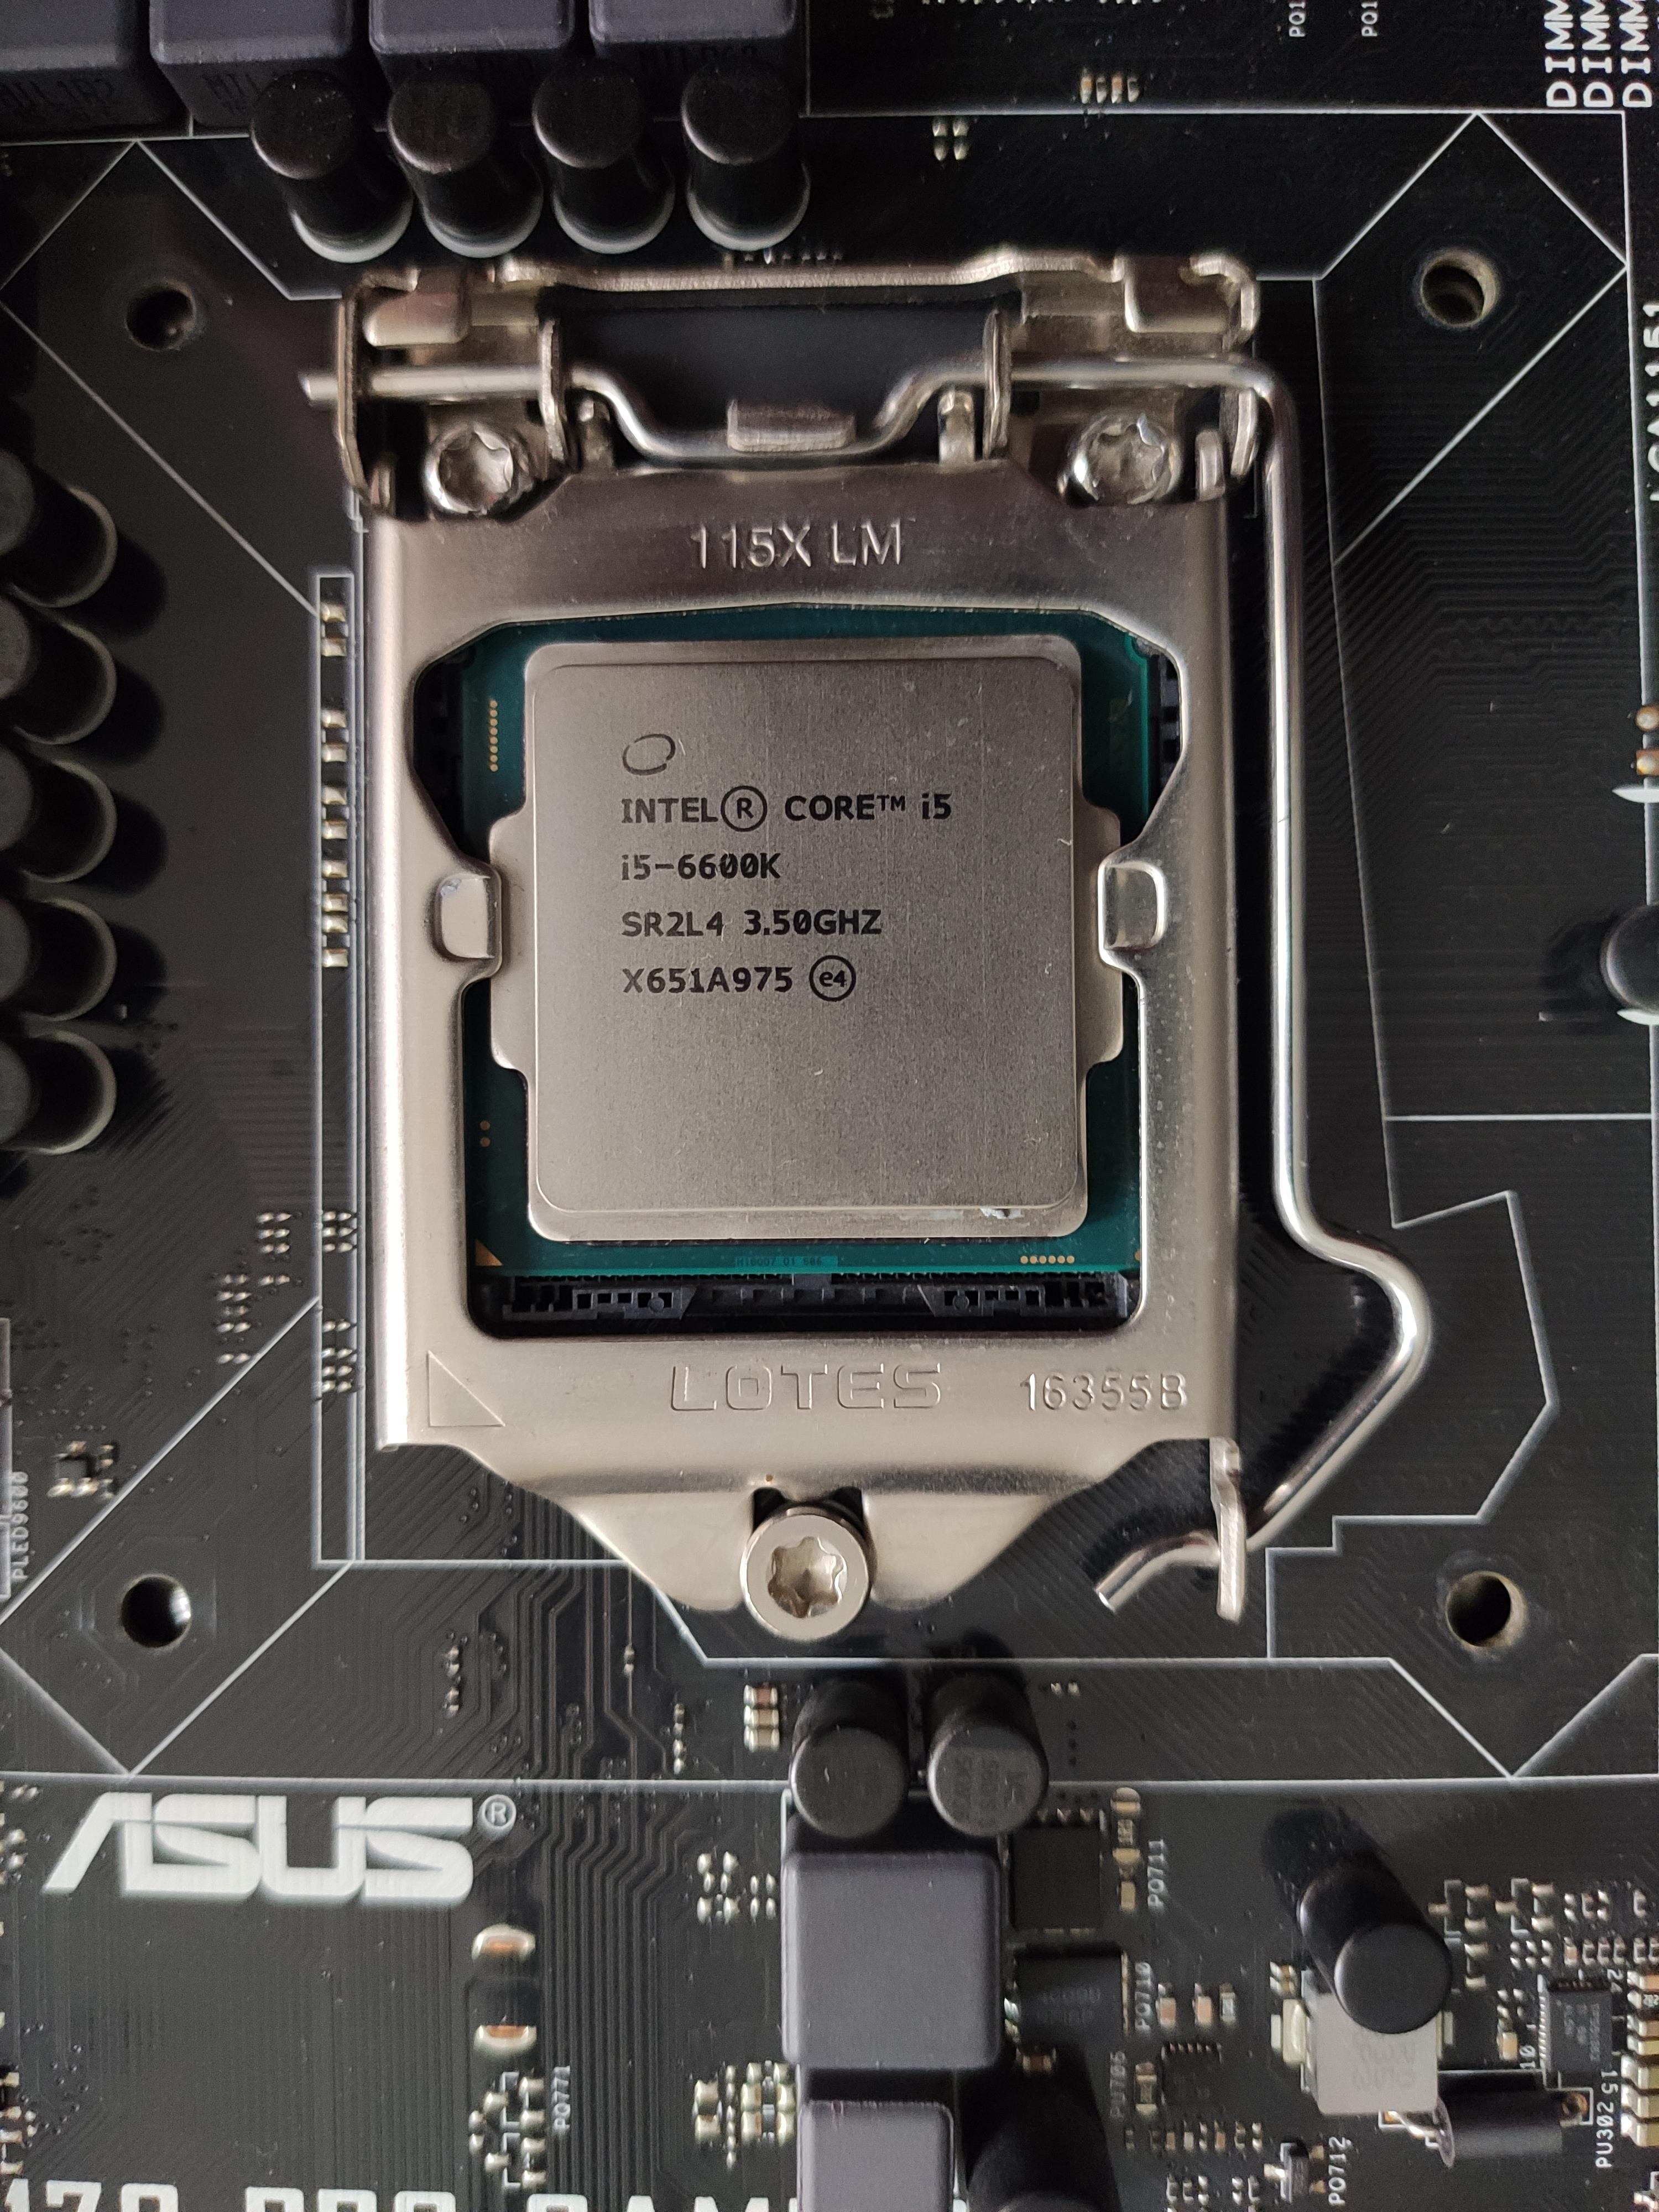 SATILDI] Satılık Intel I5 6600K İşlemci 3.5 Ghz- Tertemiz | DonanımHaber  Forum